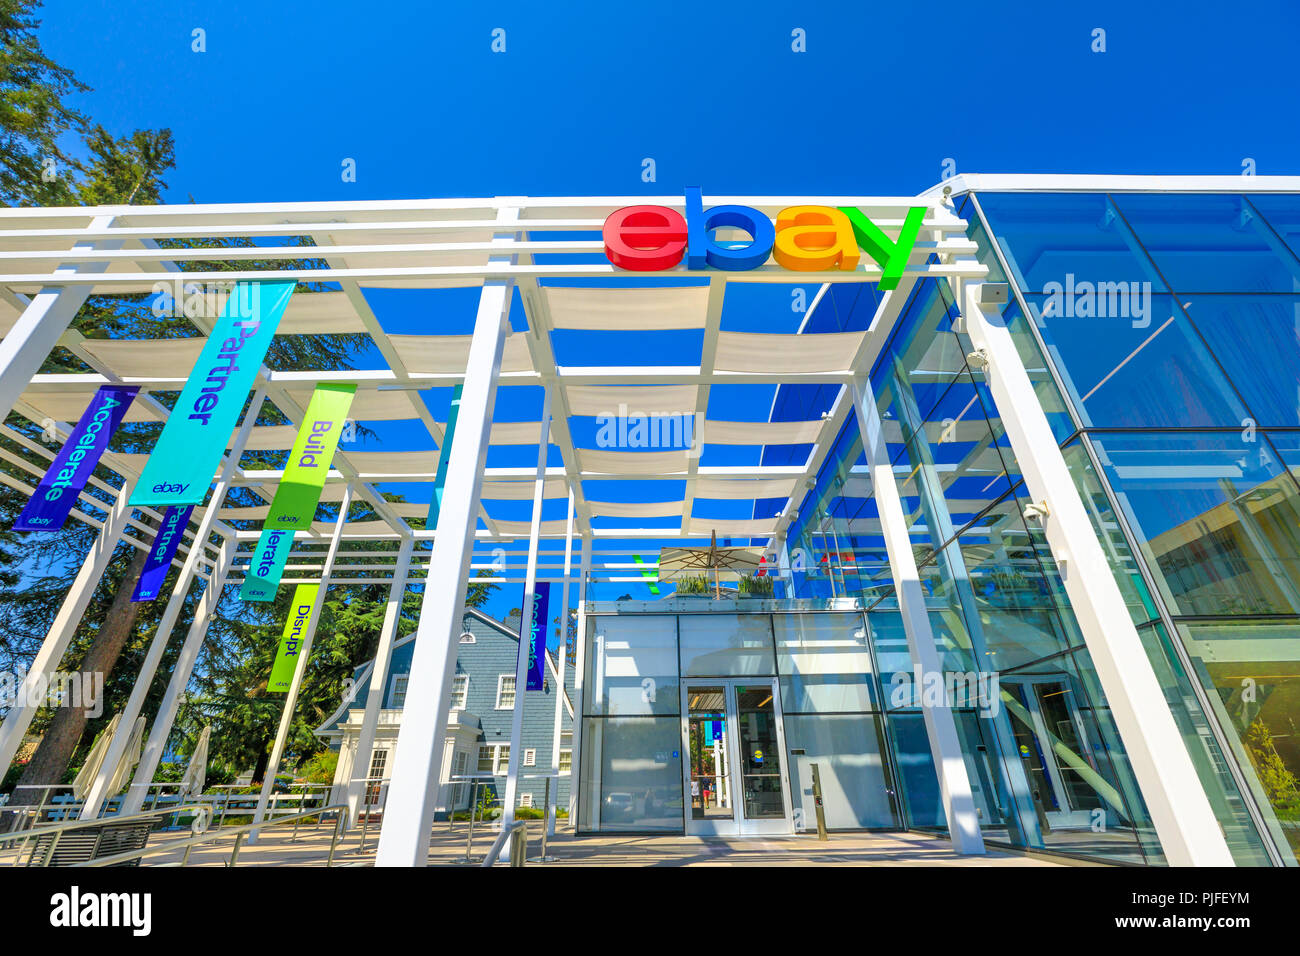 San Jose, Kalifornien, USA - 12. August 2018: die Fassade der Ebay Welt Hauptsitz. Ebay ist ein multinationales Unternehmen, dass die wichtigsten Online Marktplatz und virtuellen Speicher im Internet ermöglicht. Stockfoto